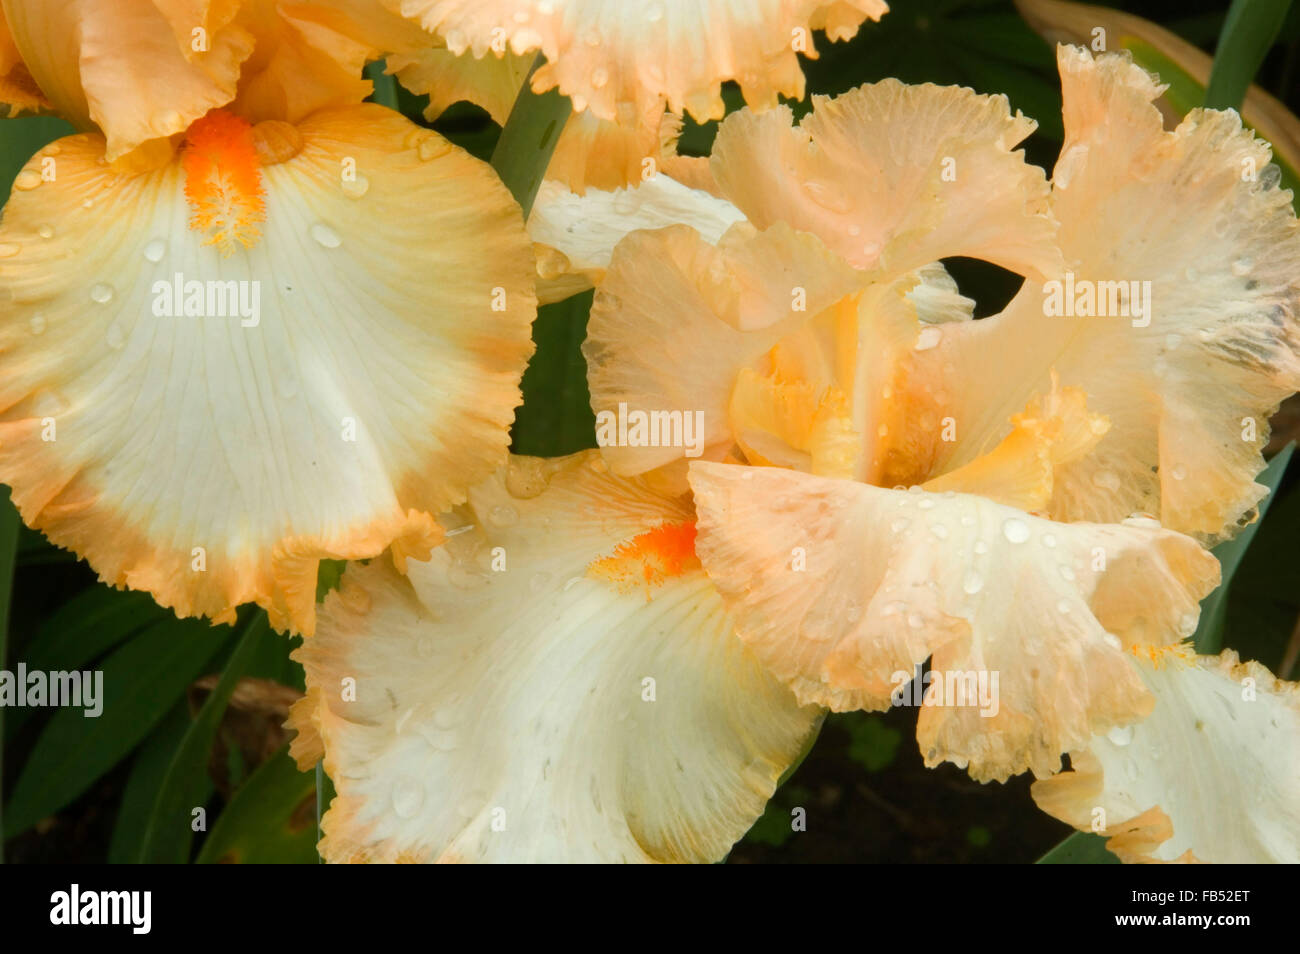 Halo in Peach iris, Schreiners Iris Gardens, Keizer, Oregon Stock Photo